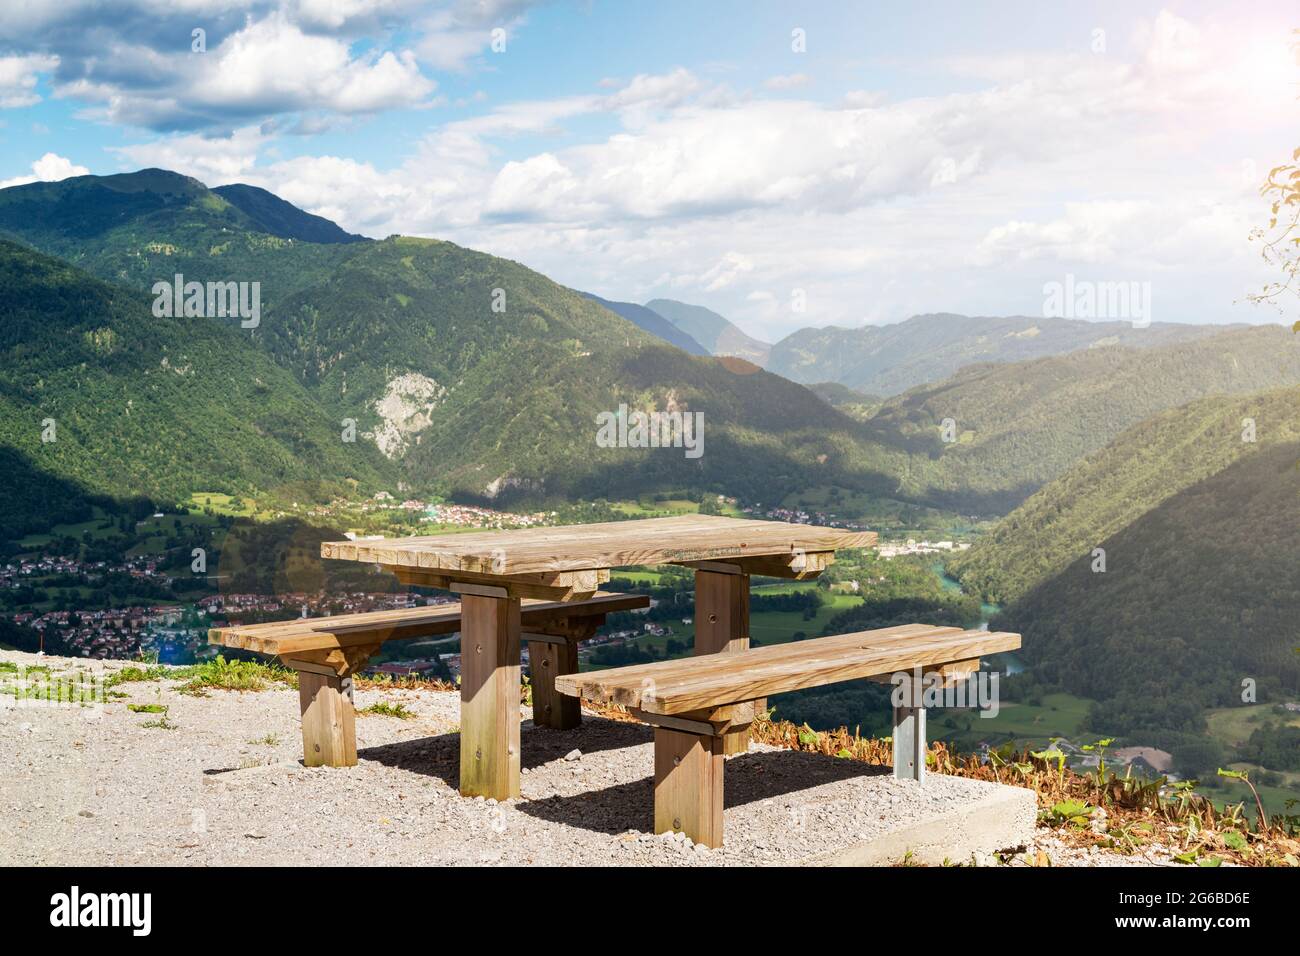 Luogo di riposo con una splendida vista panoramica sulla Val di Soca, uno dei luoghi migliori per il turismo in Slovenia Foto Stock